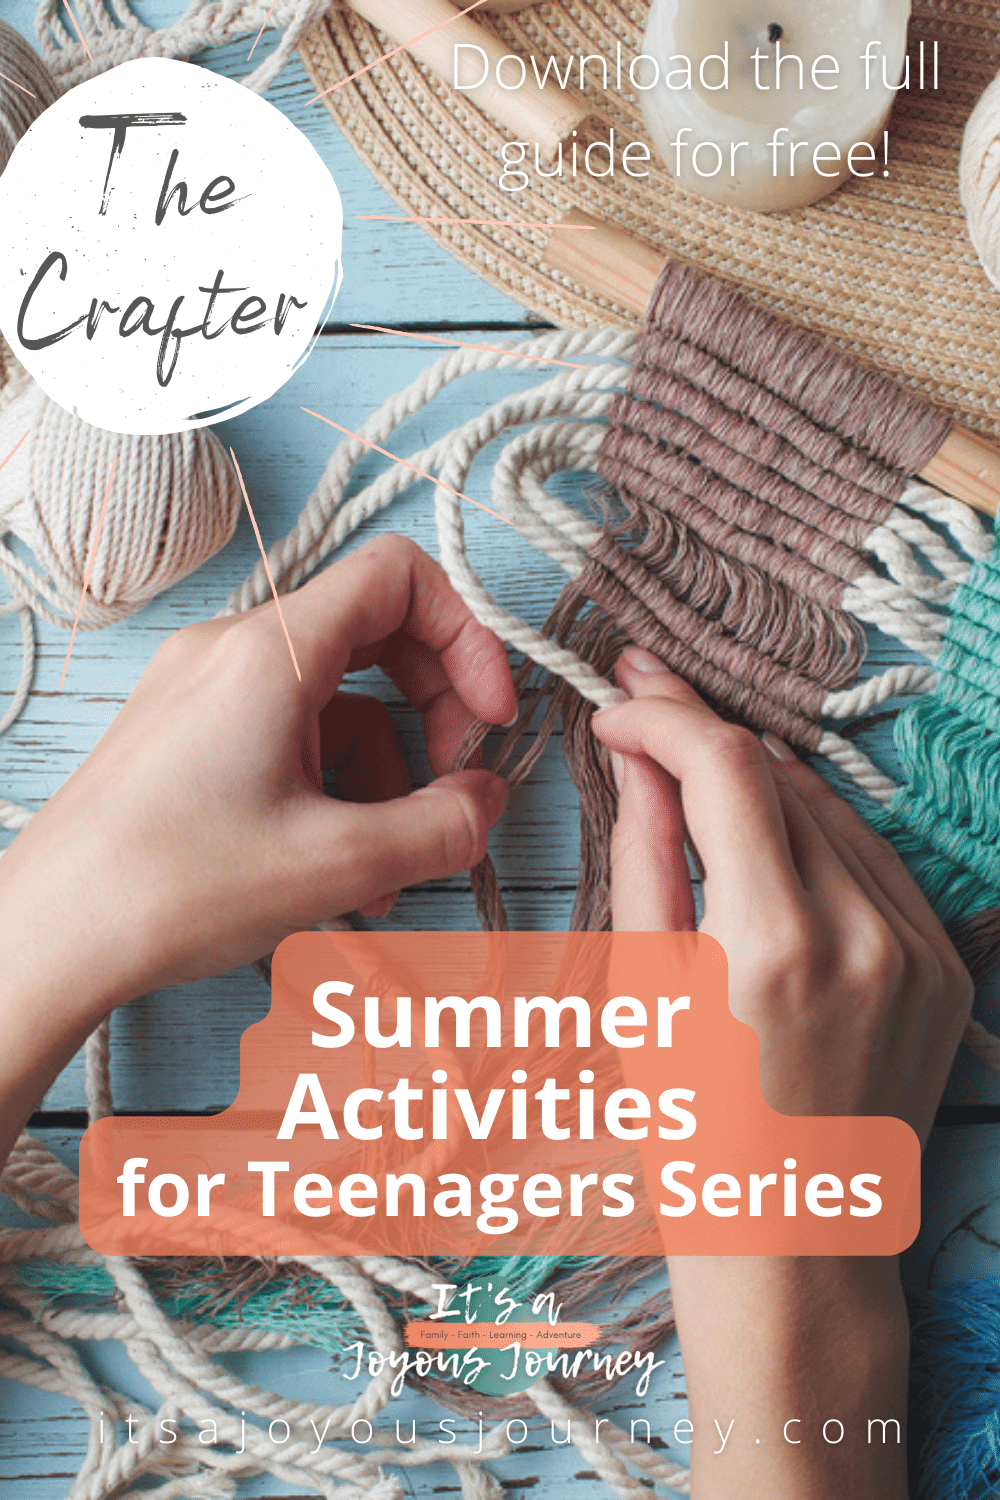 Summer Activities for Teenagers Series